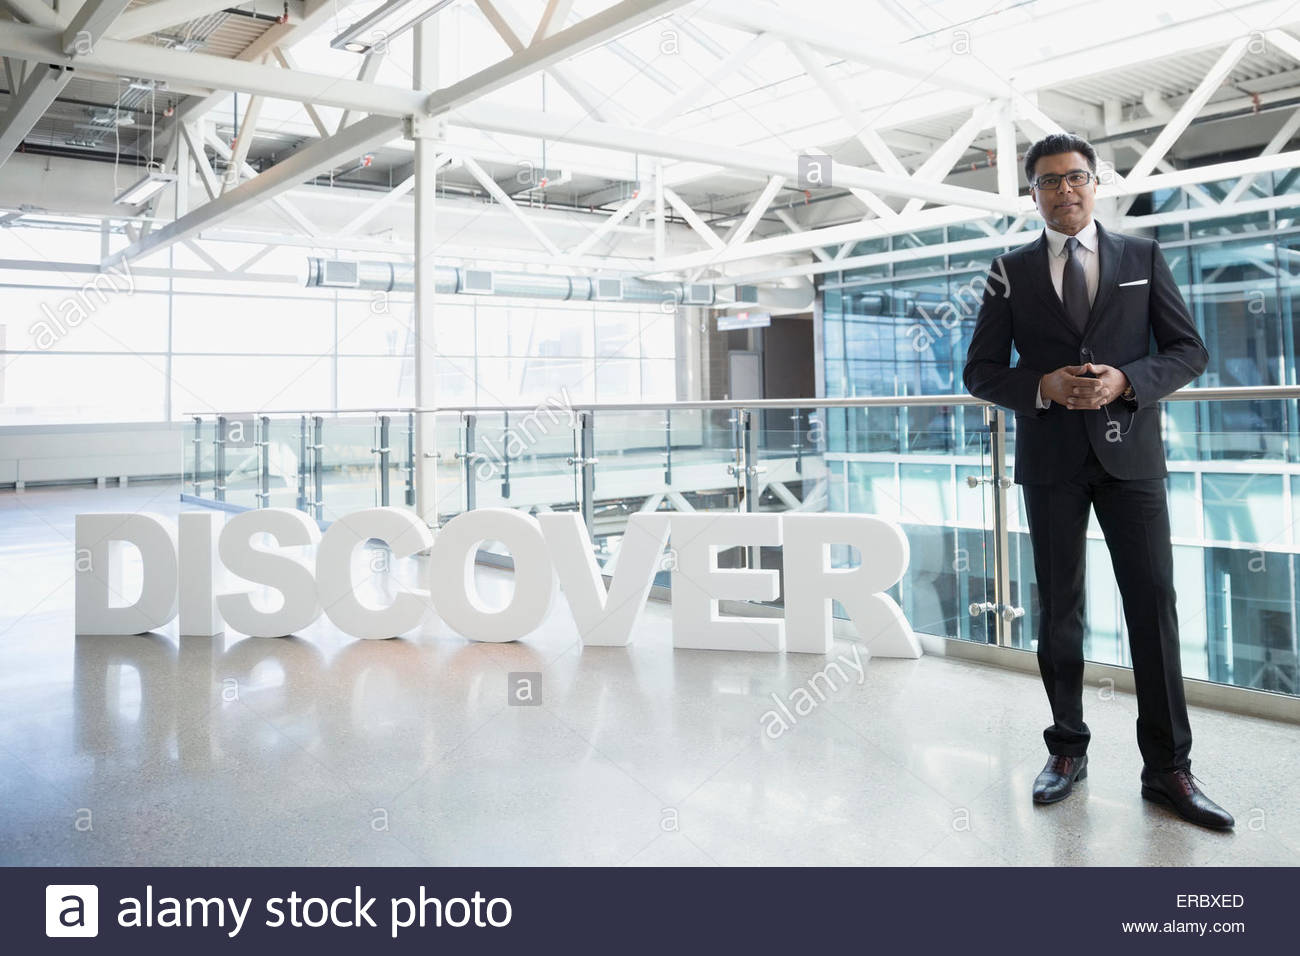 Portrait confident businessman next to 'Discover' text atrium Stock Photo